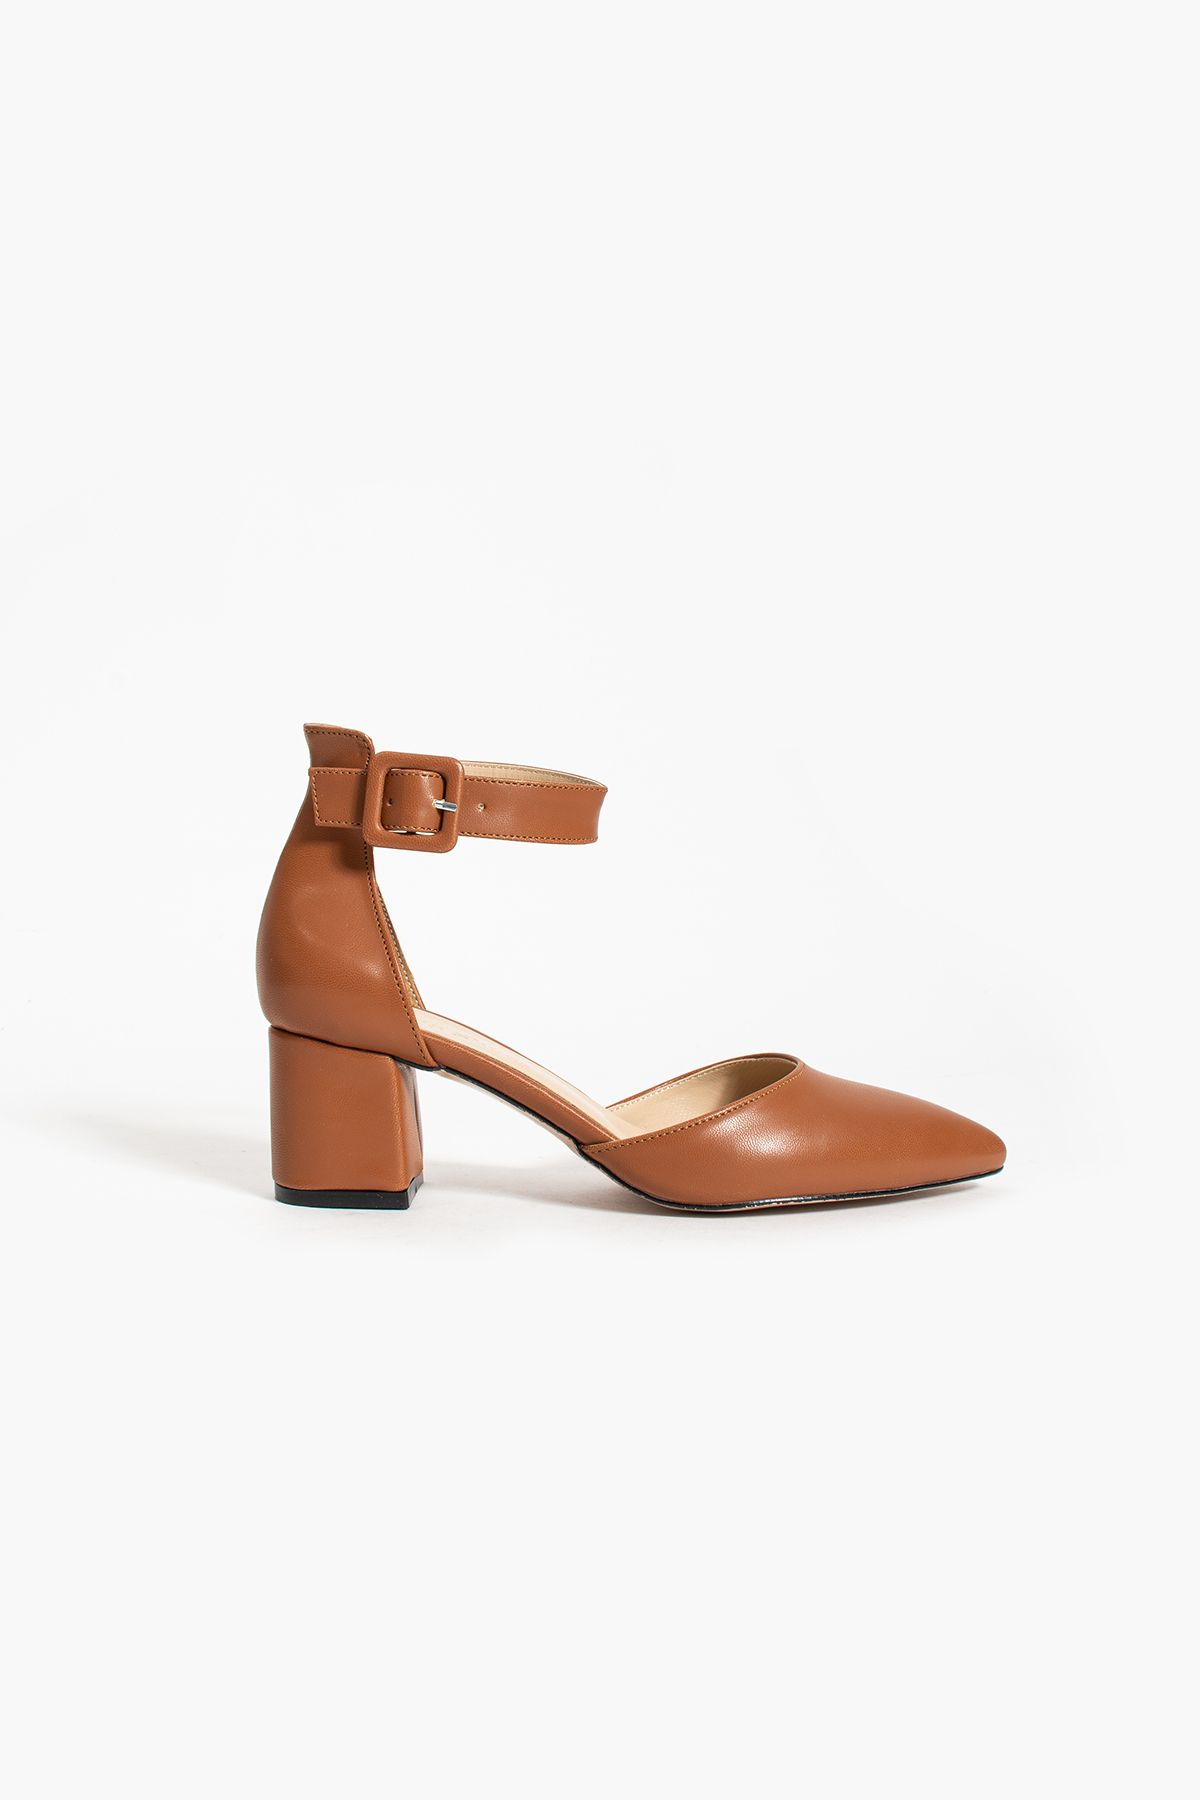 Güllü Shoes Kadin Kahverengi Topuklu Ayakkabı Abiye Stiletto Kalın Topuk Gelinlik Ayakkabisi 5.5cm